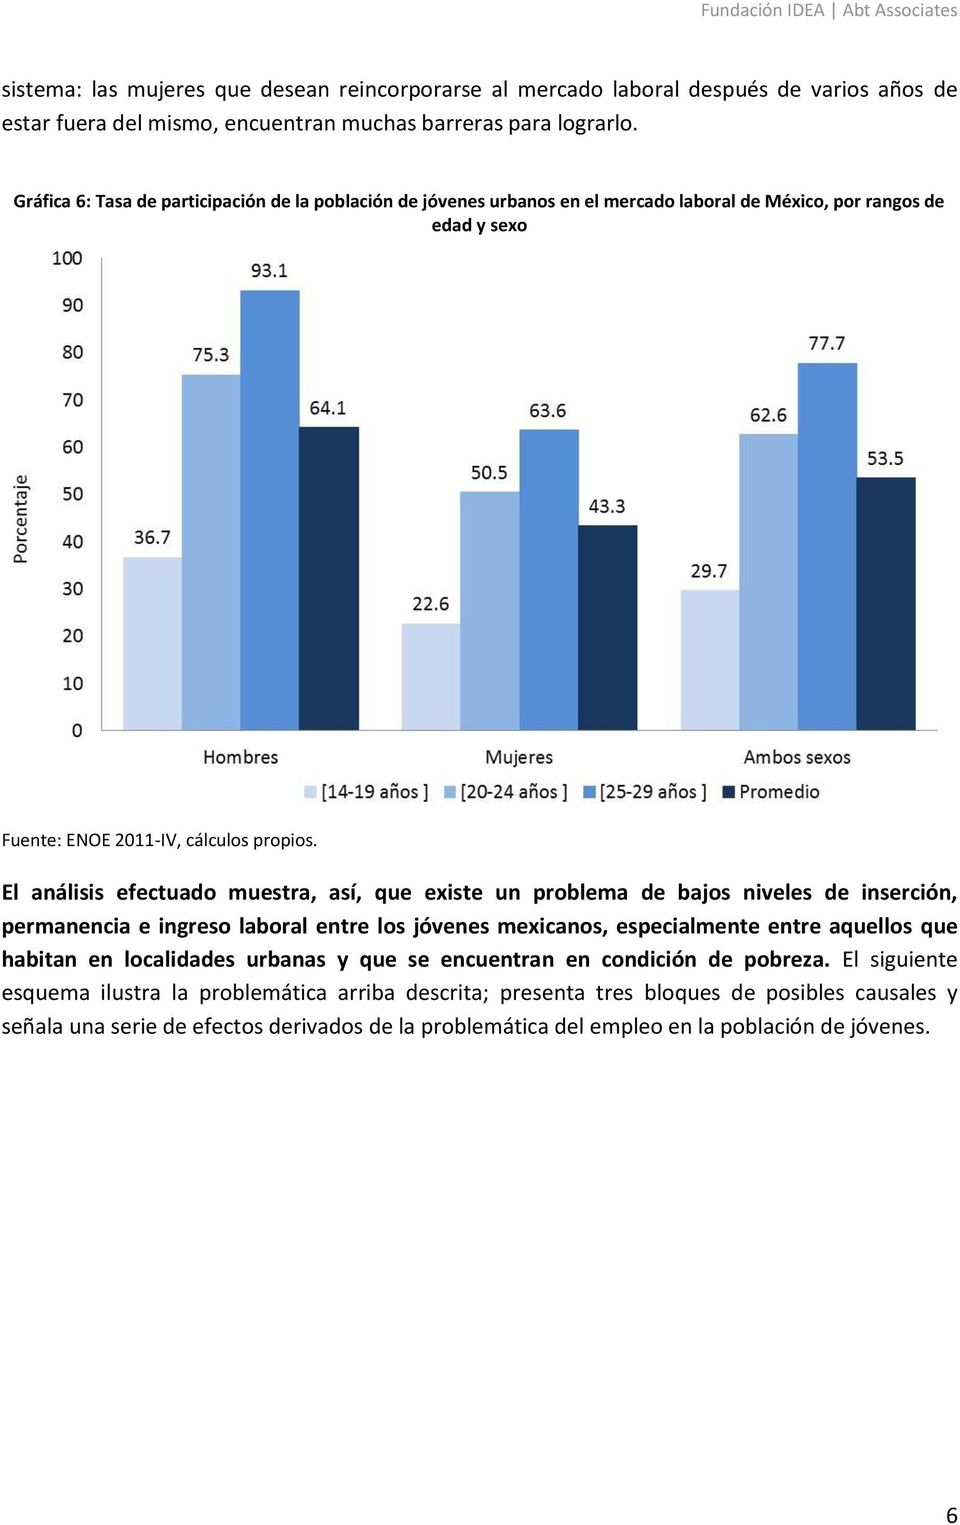 El análisis efectuado muestra, así, que existe un problema de bajos niveles de inserción, permanencia e ingreso laboral entre los jóvenes mexicanos, especialmente entre aquellos que habitan en